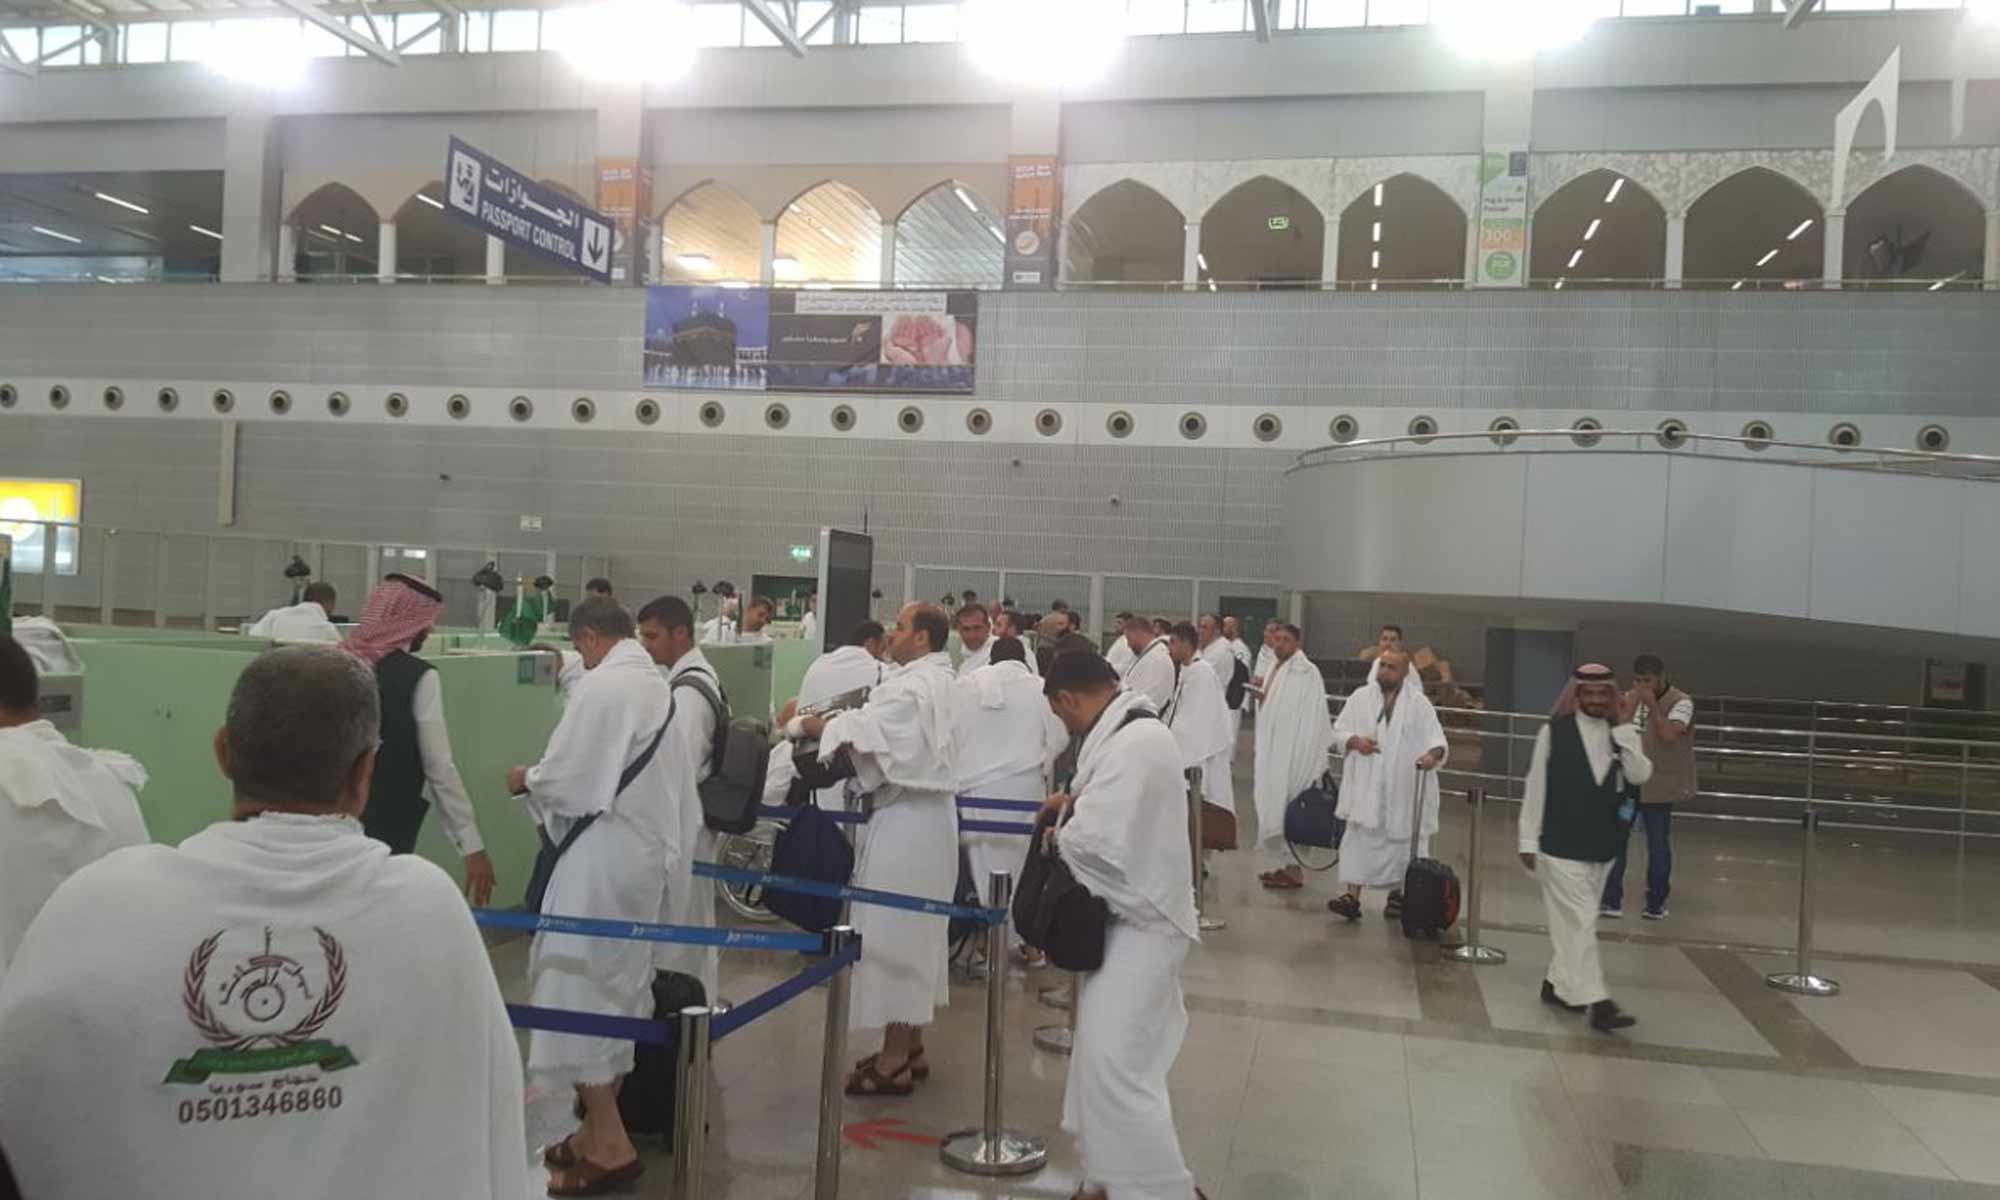 وصول الحجاج السوريين إلى مطار جدة في السعودية - 4 من آب 2018 (عنب بلدي)